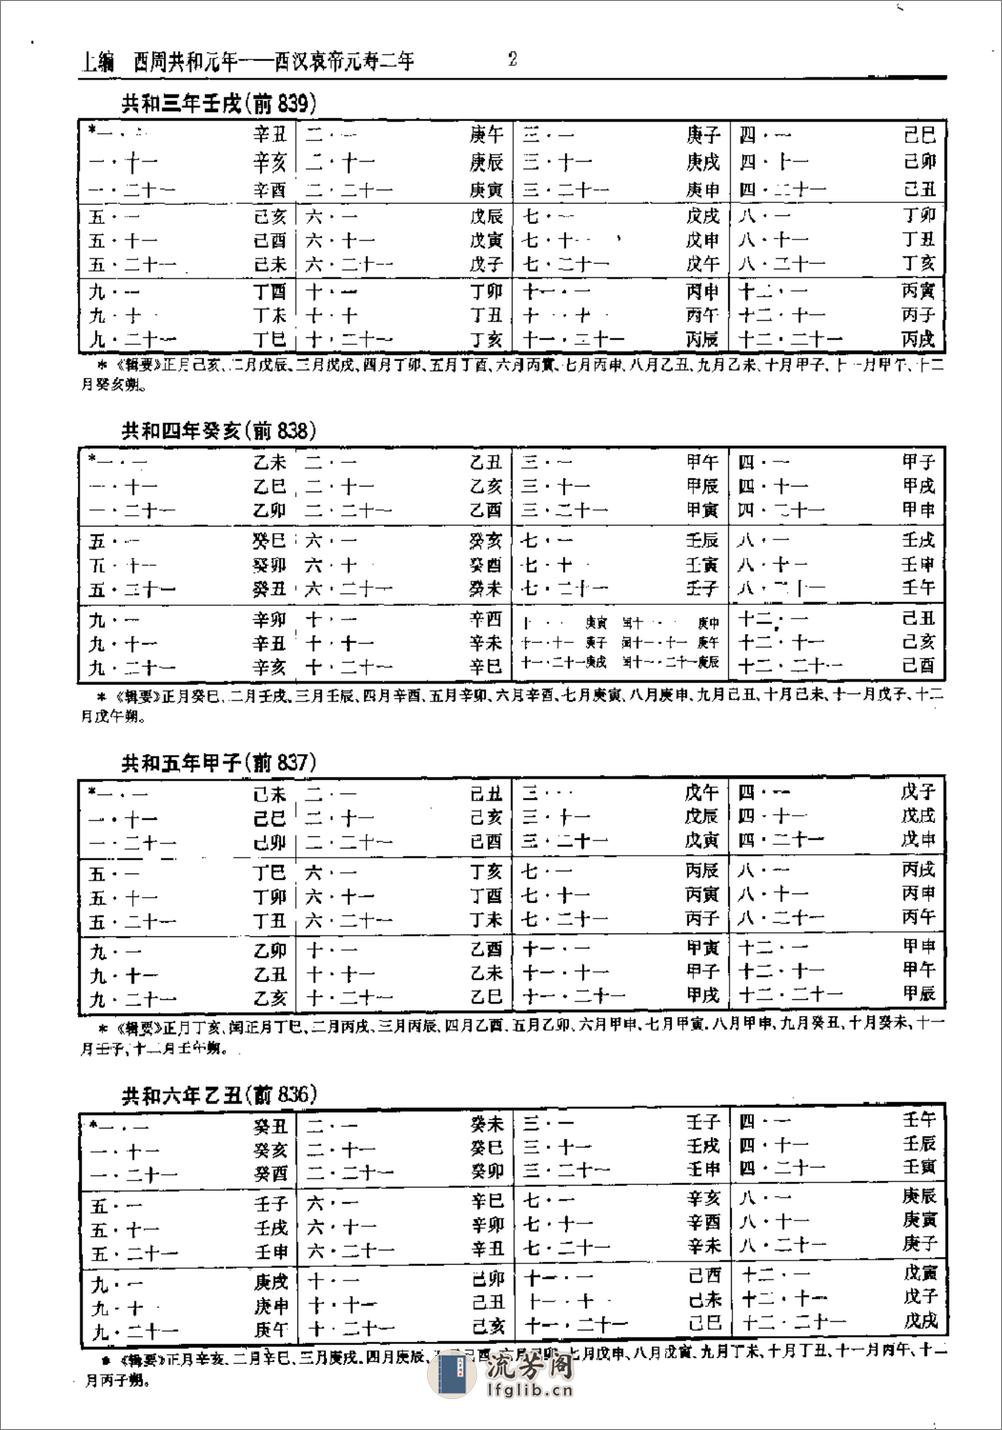 中国史历日和中西历日对照表·方诗铭·上海辞书1 - 第7页预览图